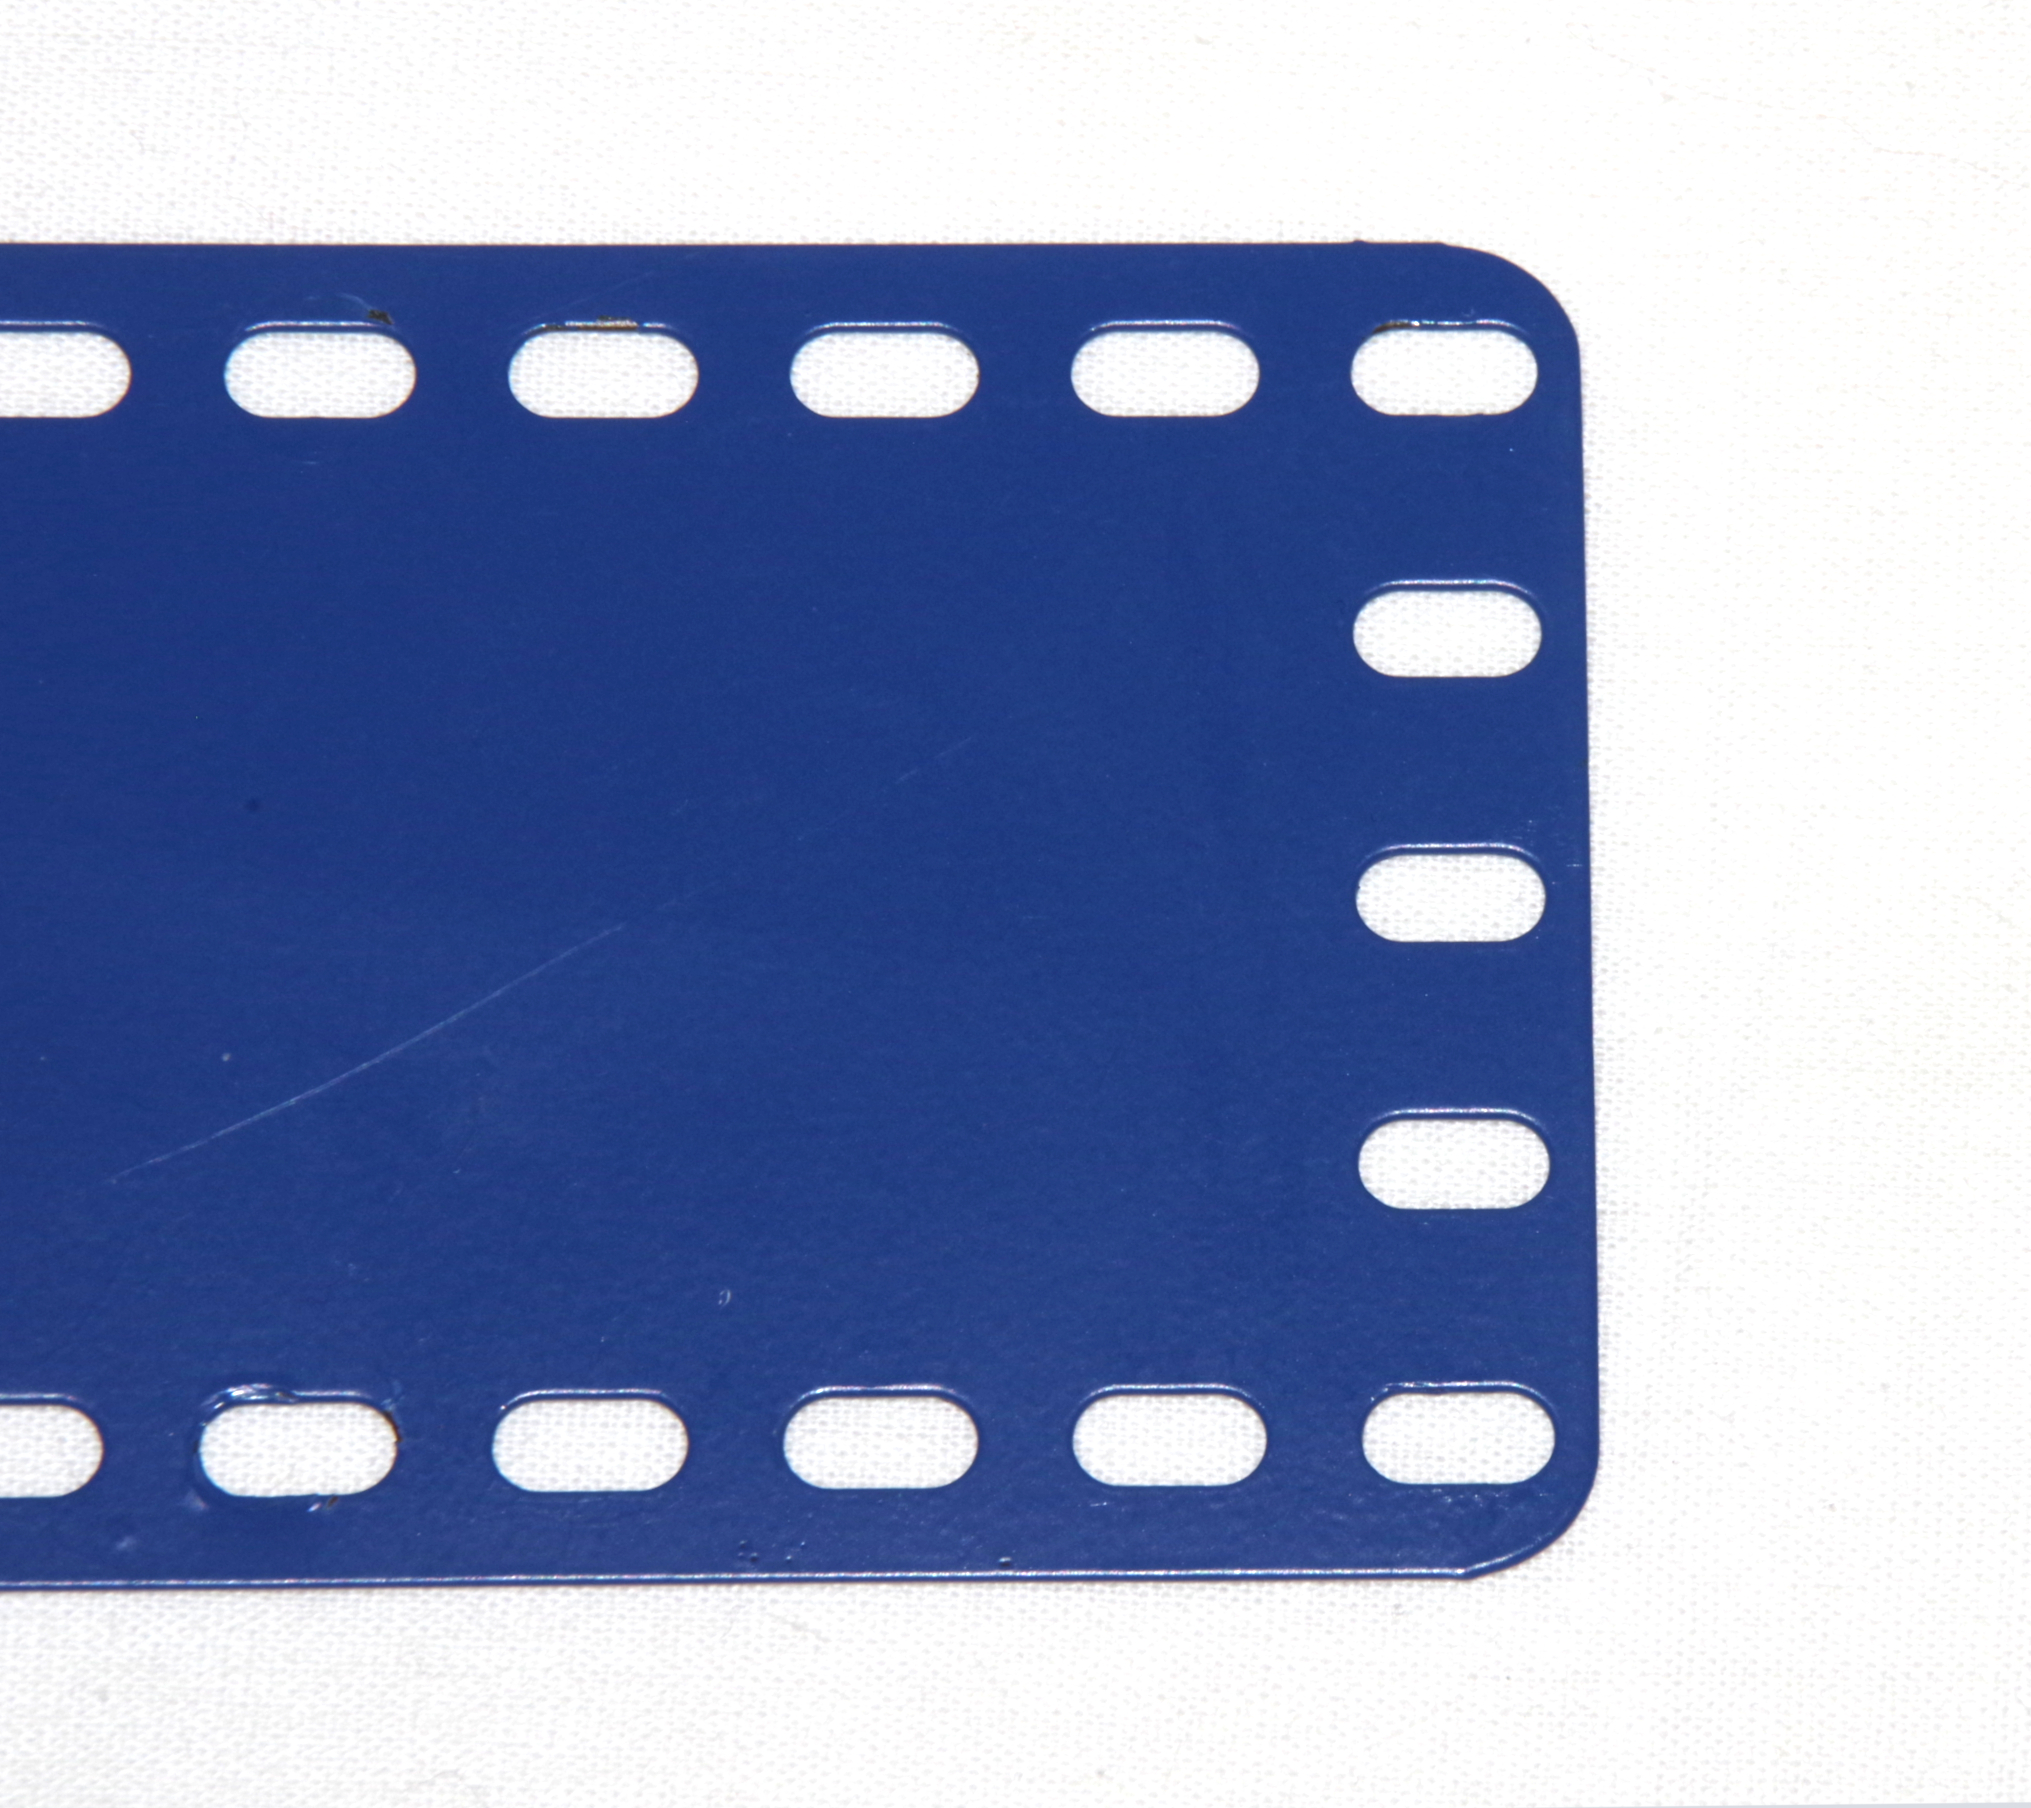 4505-11 Flat Plate 11x5 Metallus Blue Used